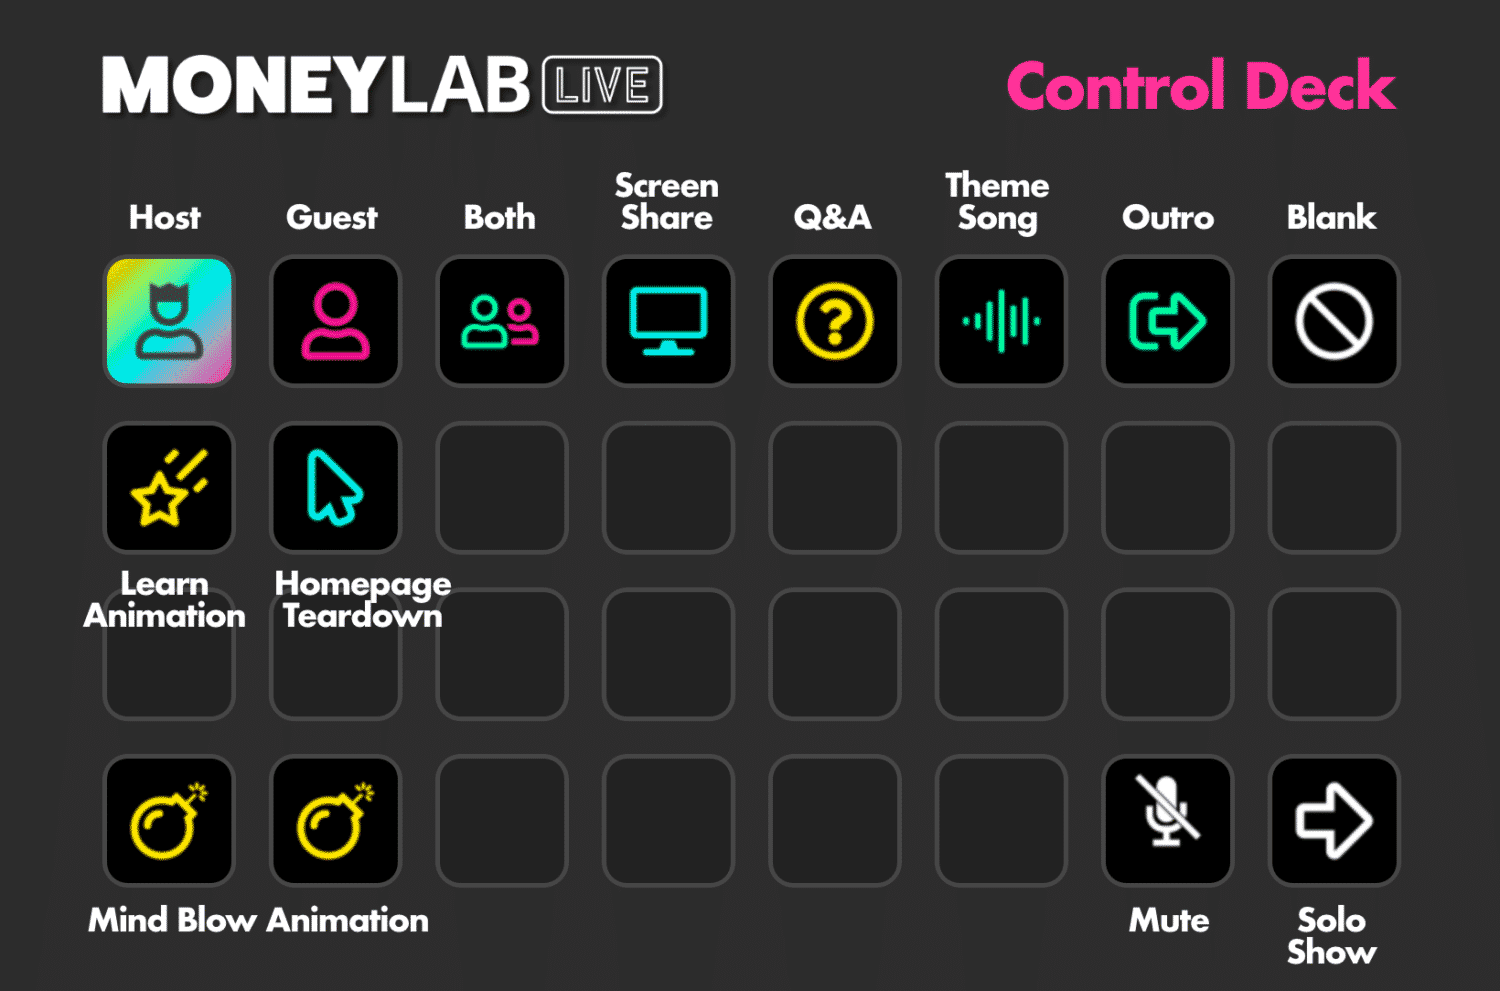 Original Stream Deck Setup for Money Lab Live January 2021